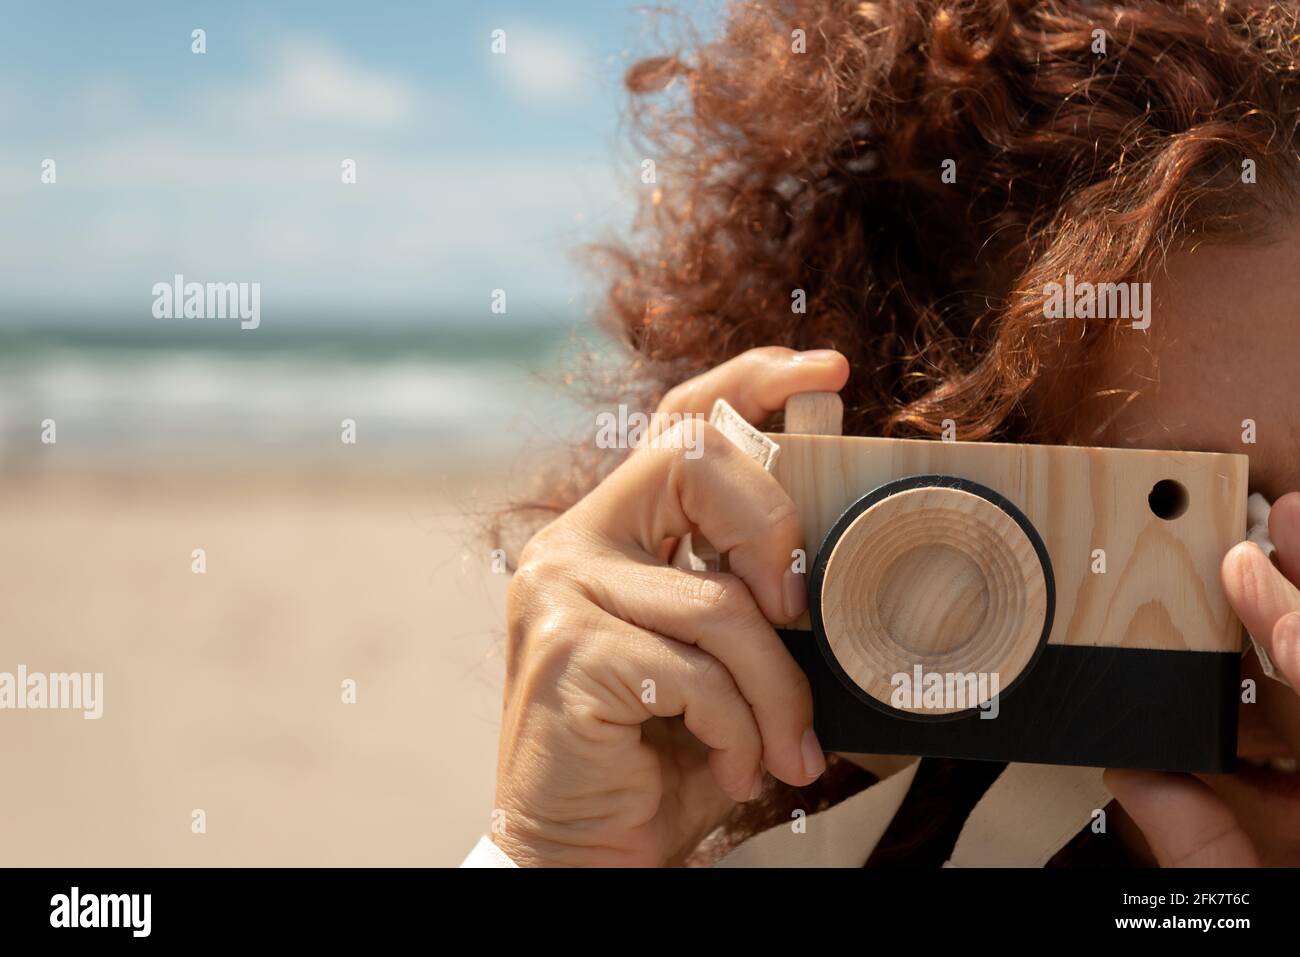 Nahaufnahme eines Porträts einer jungen Frau mit lockigen roten Haaren, die eine Fotokamera mit Holzspielzeug vor dem Hintergrund eines Sandstrandes hält. Witziges Fotografiekonzept Stockfoto